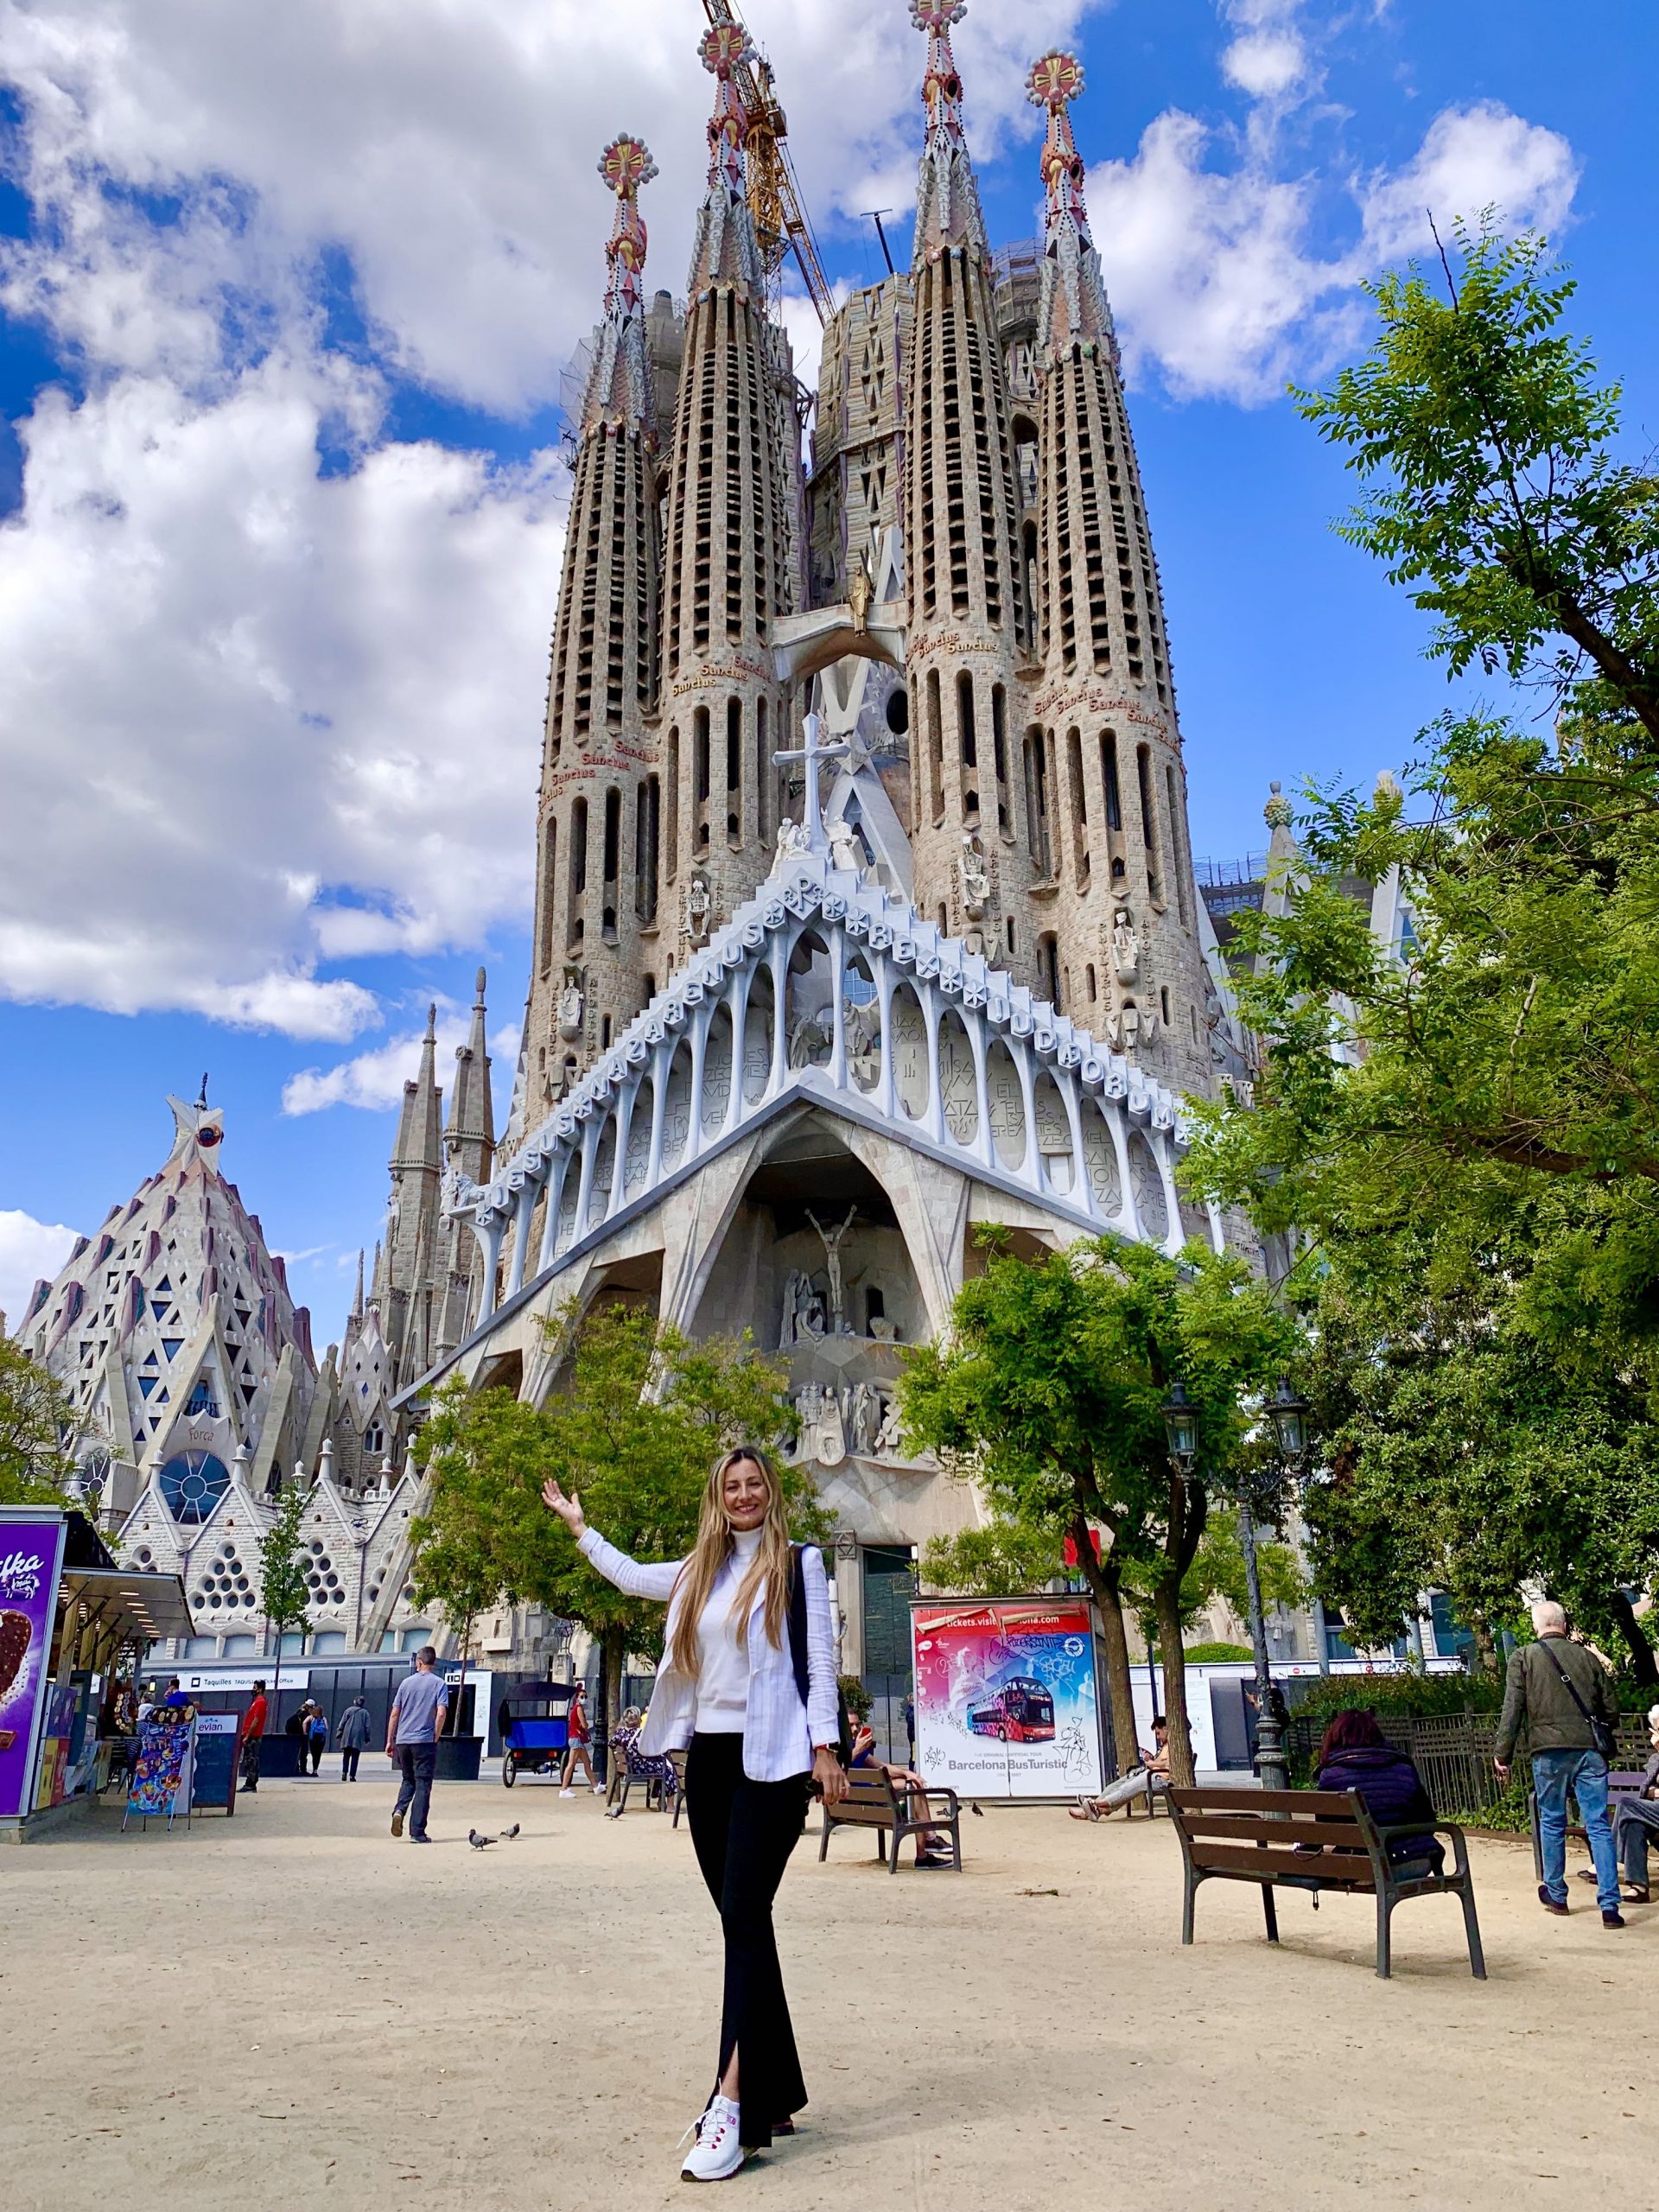 kalk fællesskab skuffe Top 10 places to visit in Barcelona - Live Life Barcelona Tours